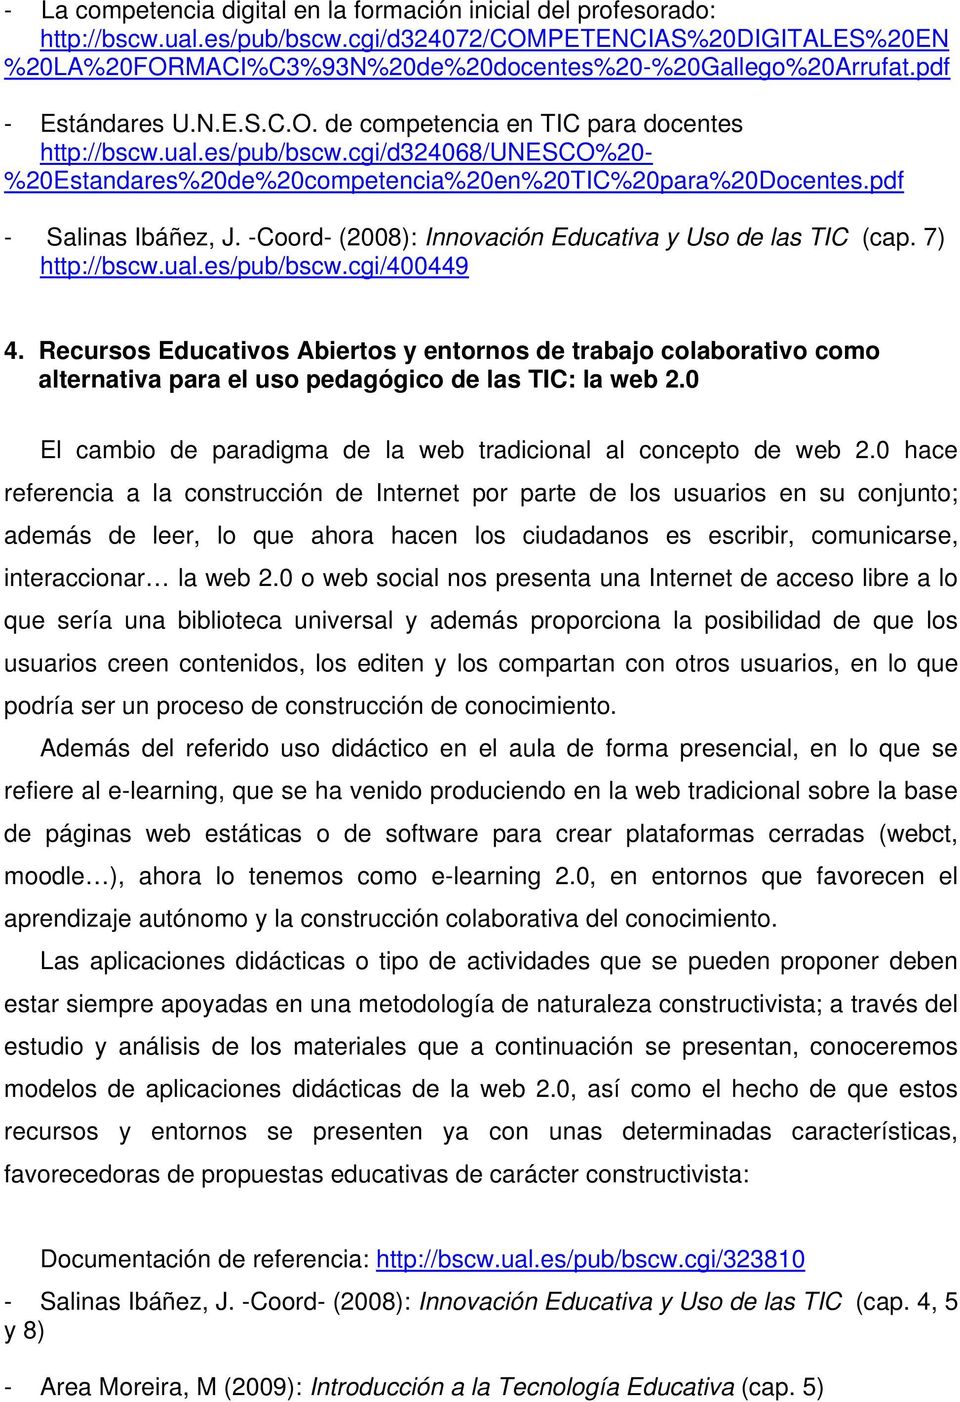 pdf - Salinas Ibáñez, J. -Coord- (2008): Innovación Educativa y Uso de las TIC (cap. 7) http://bscw.ual.es/pub/bscw.cgi/400449 4.